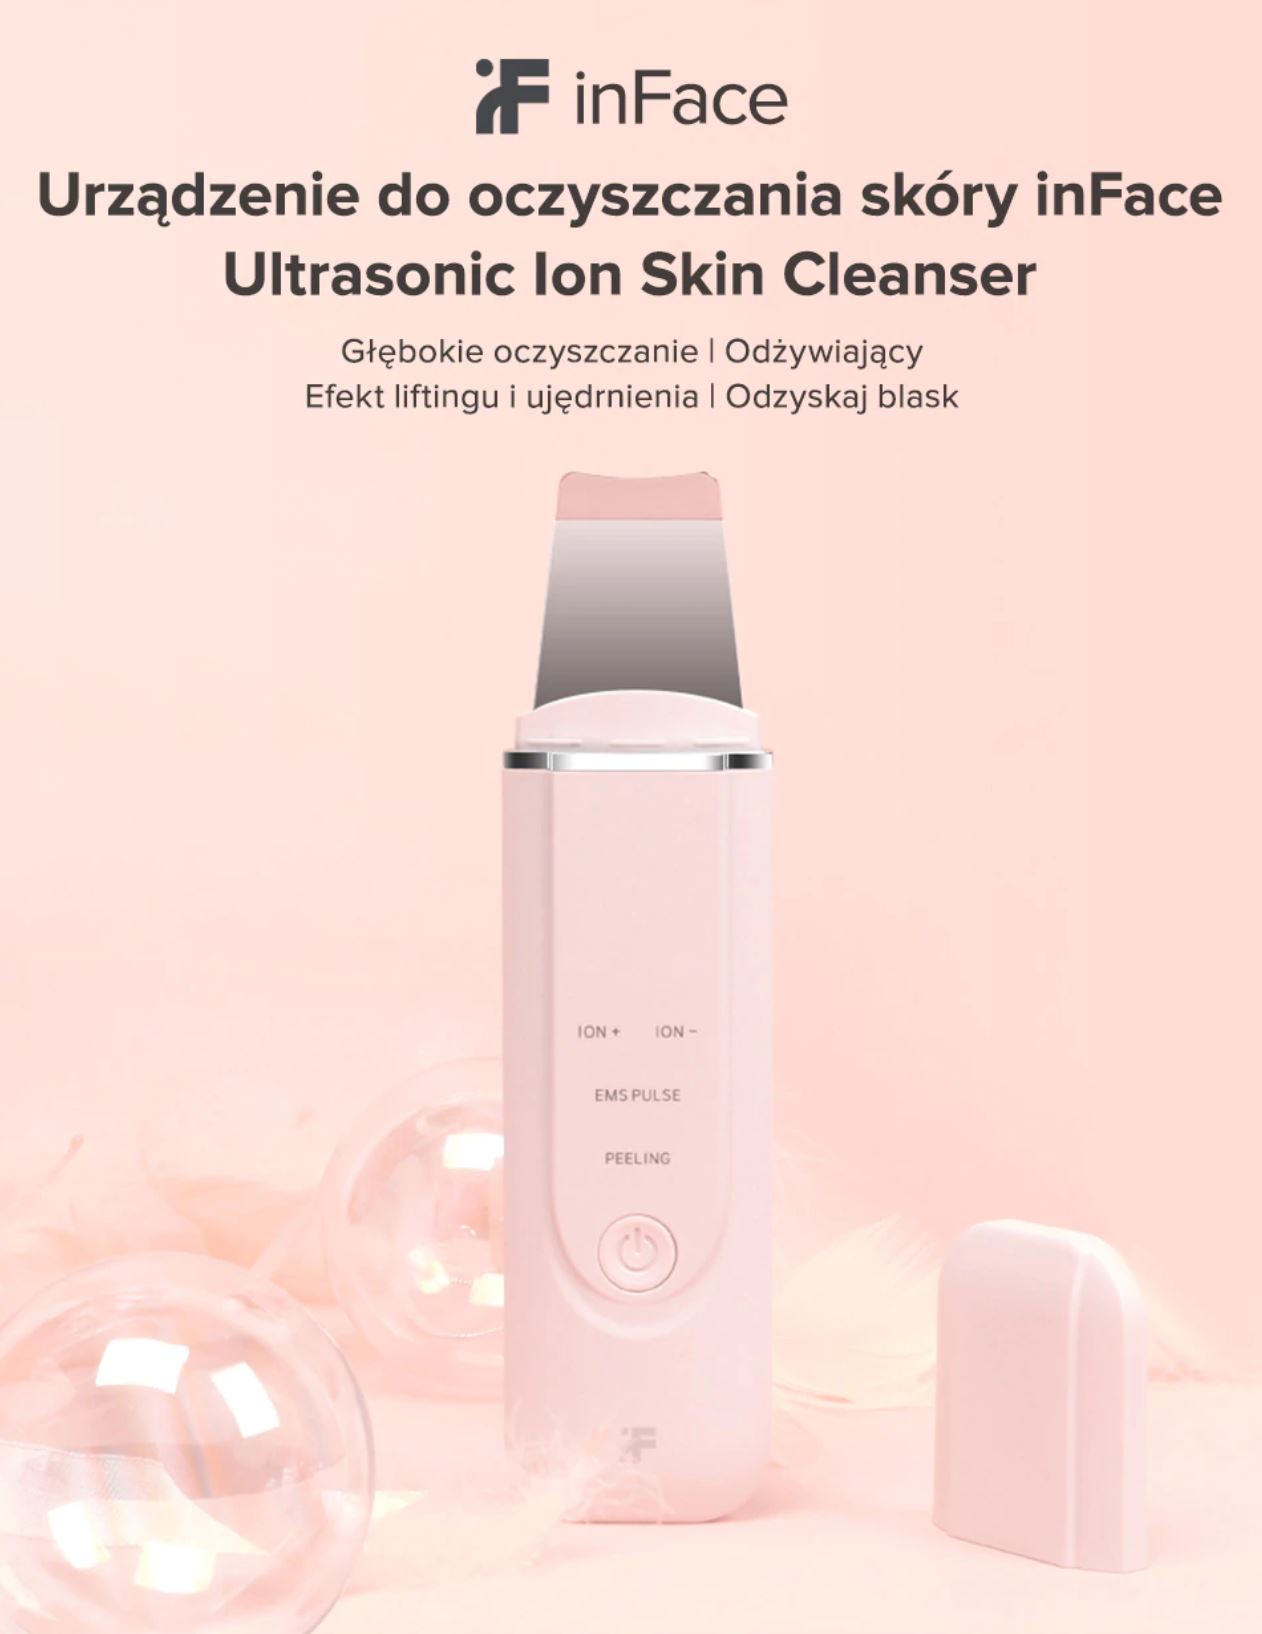 Promocje Aliexpress w dziale Beauty - soniczna szczoteczka - urządznie do oczyszczania skóry inFace